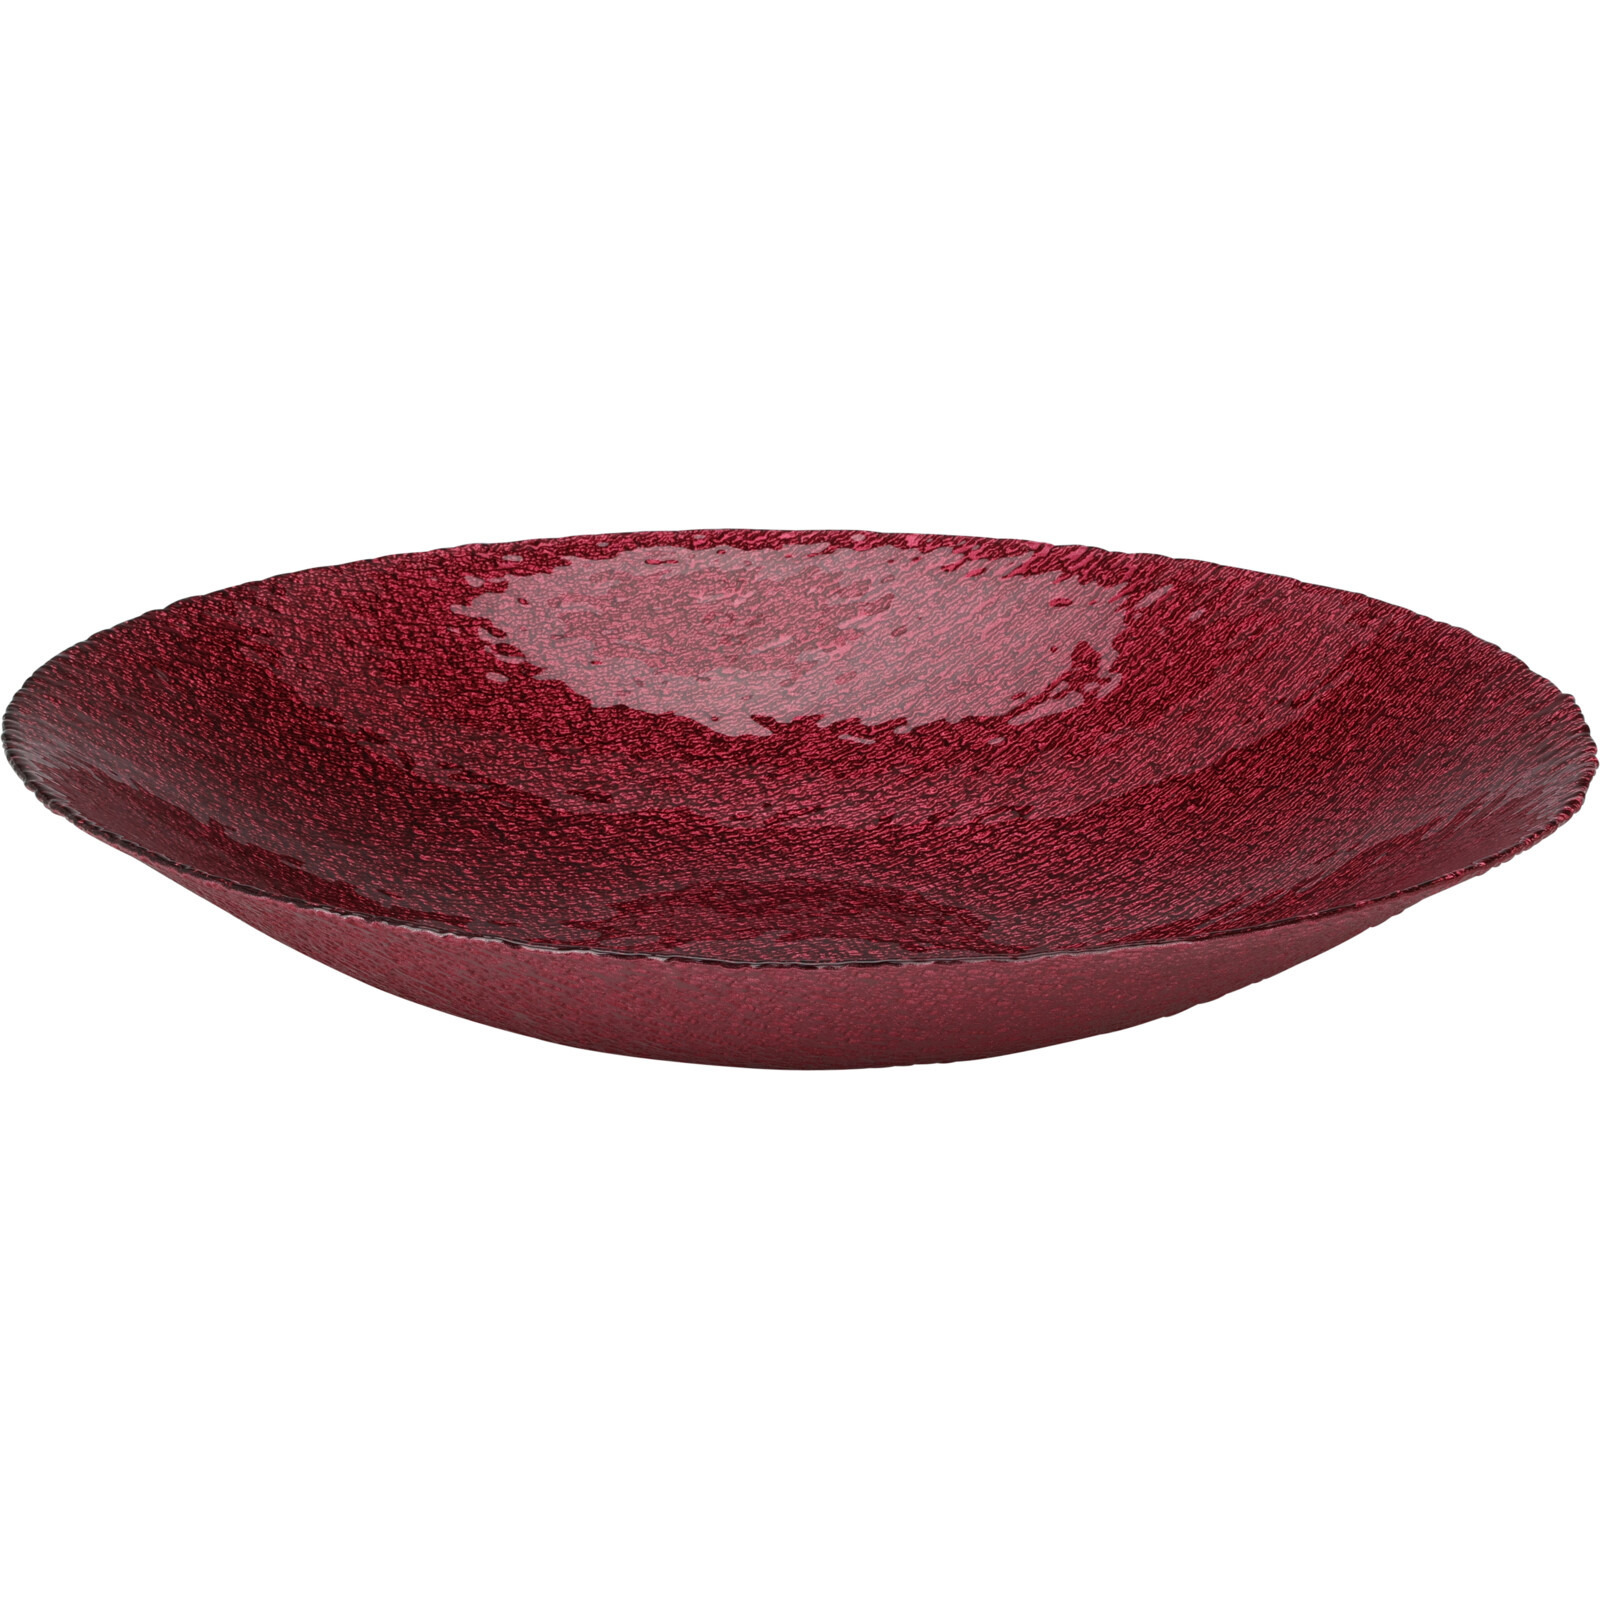 Glazen decoratie schaal-fruitschaal rood rond D40 x H7 cm